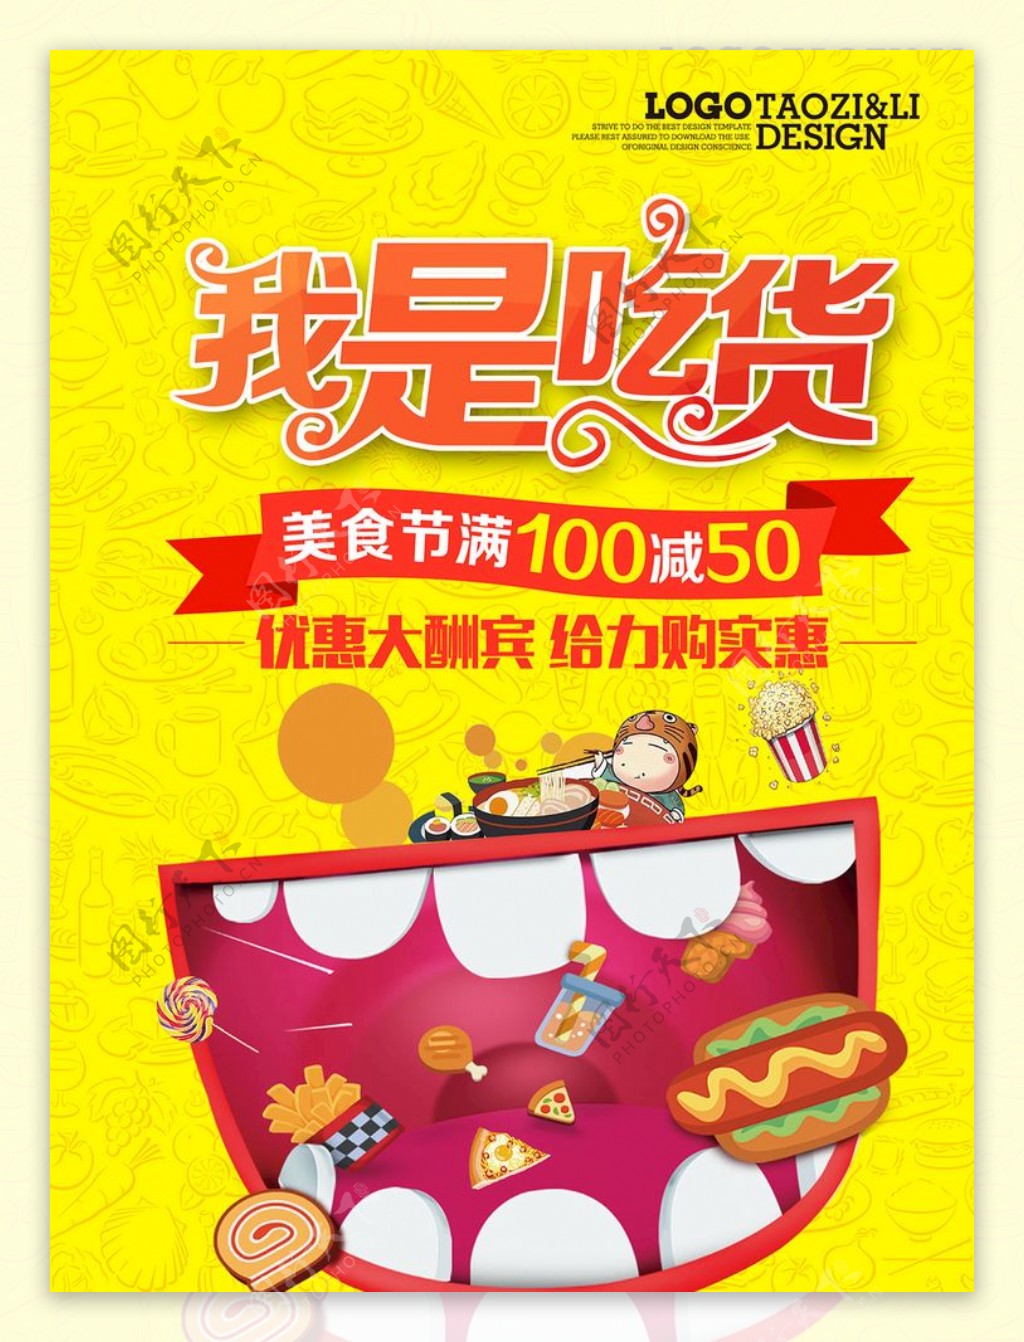 “食伊所爱”美食节系列活动之“我是吃货”顺利举行-南京财经大学团委